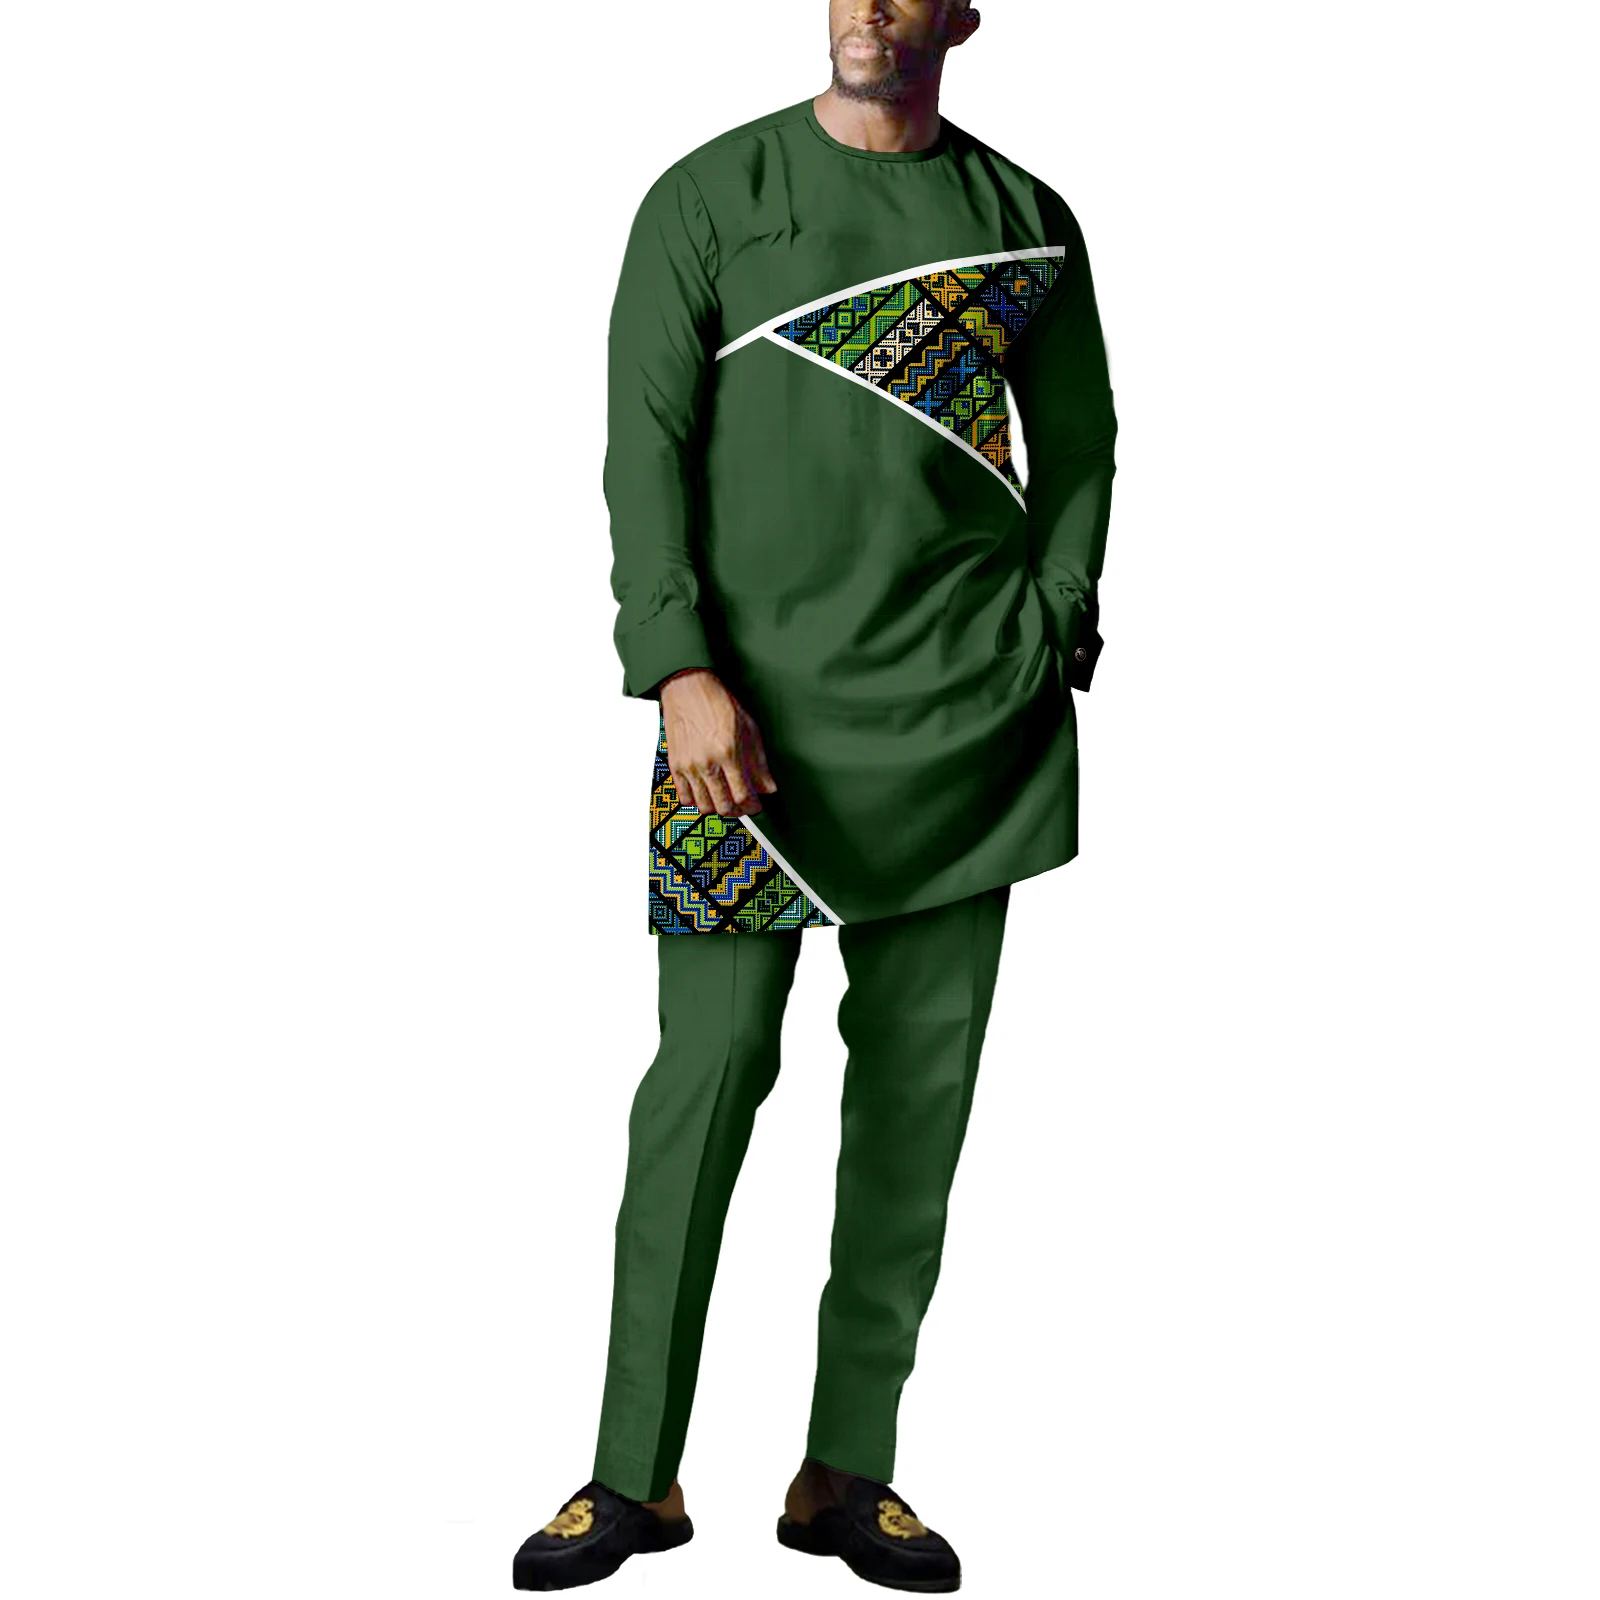 Африканская традиционная одежда для мужчин, Дашики, Свободная повседневная одежда по контракту, племенные наряды, Модный спортивный костюм, комплект из 2 предметов 4